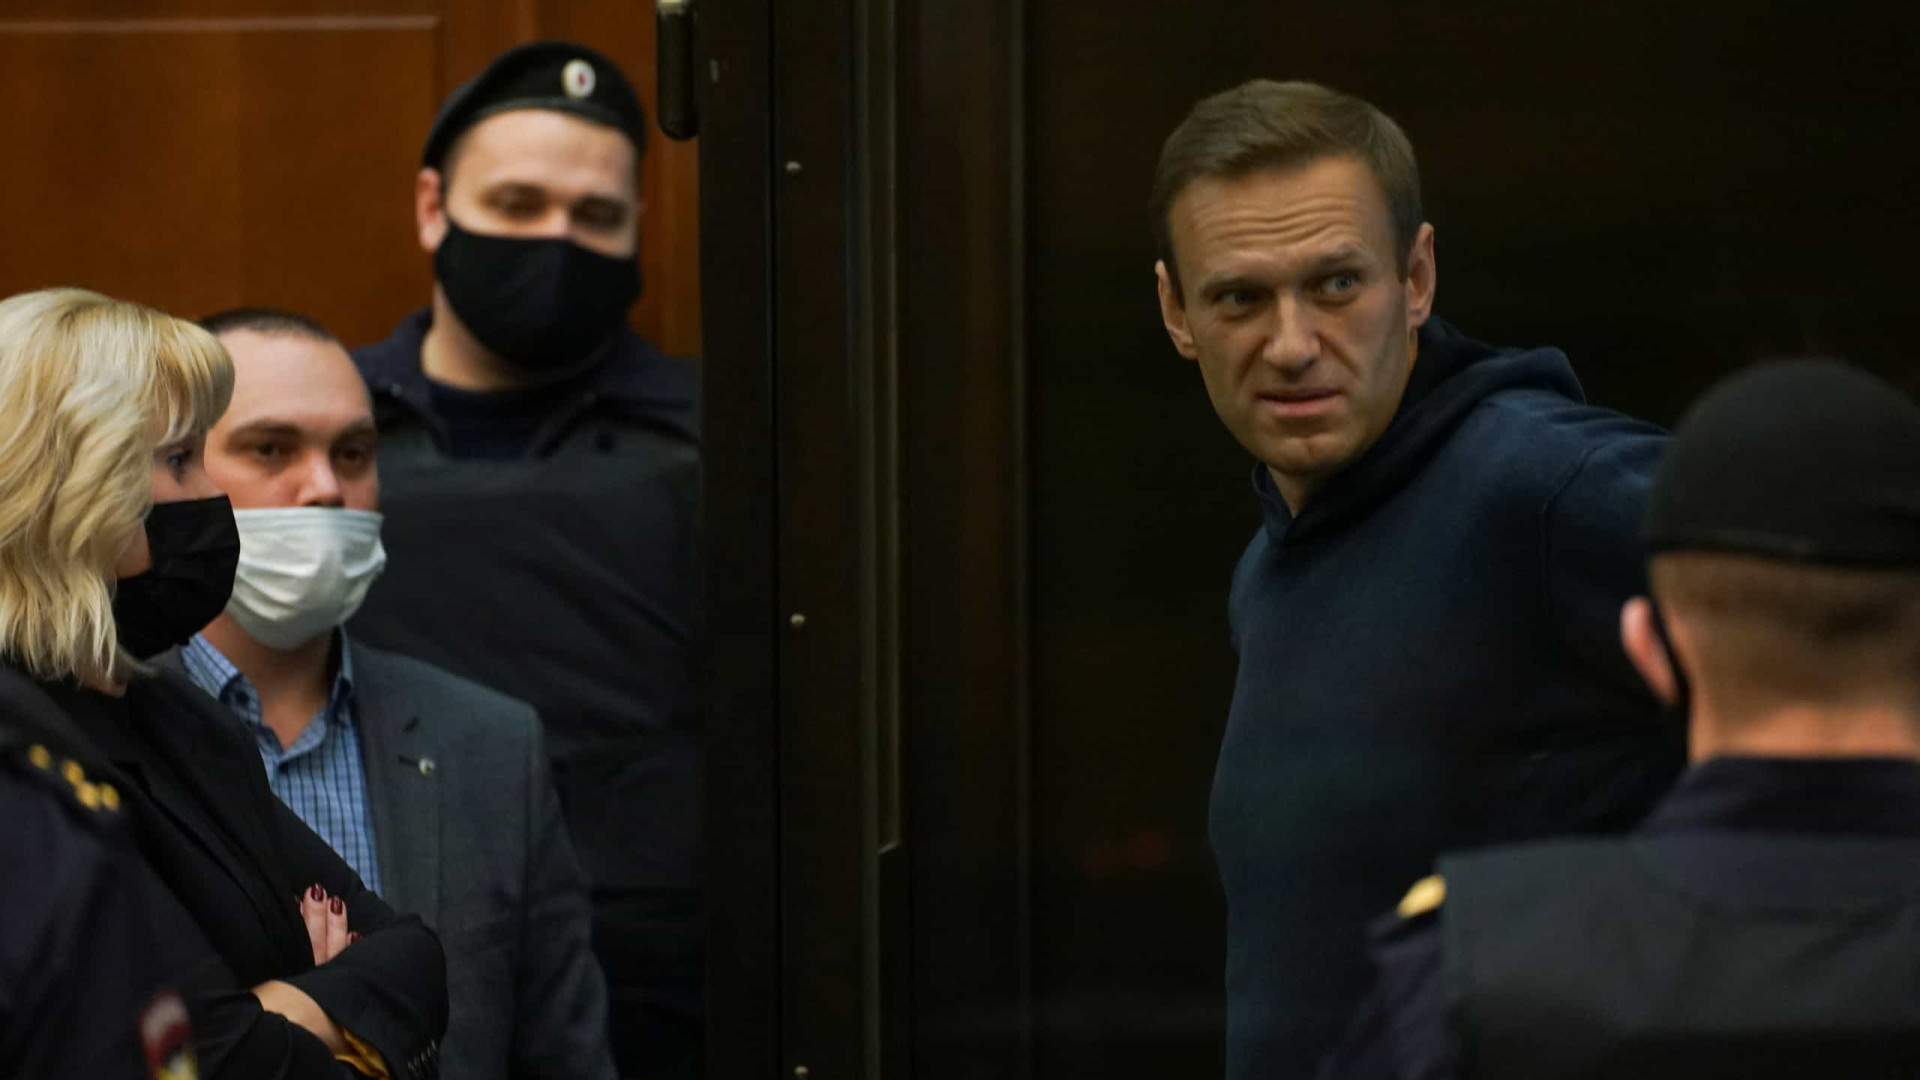 Serviço prisional russo vai transferir Navalny para um hospital